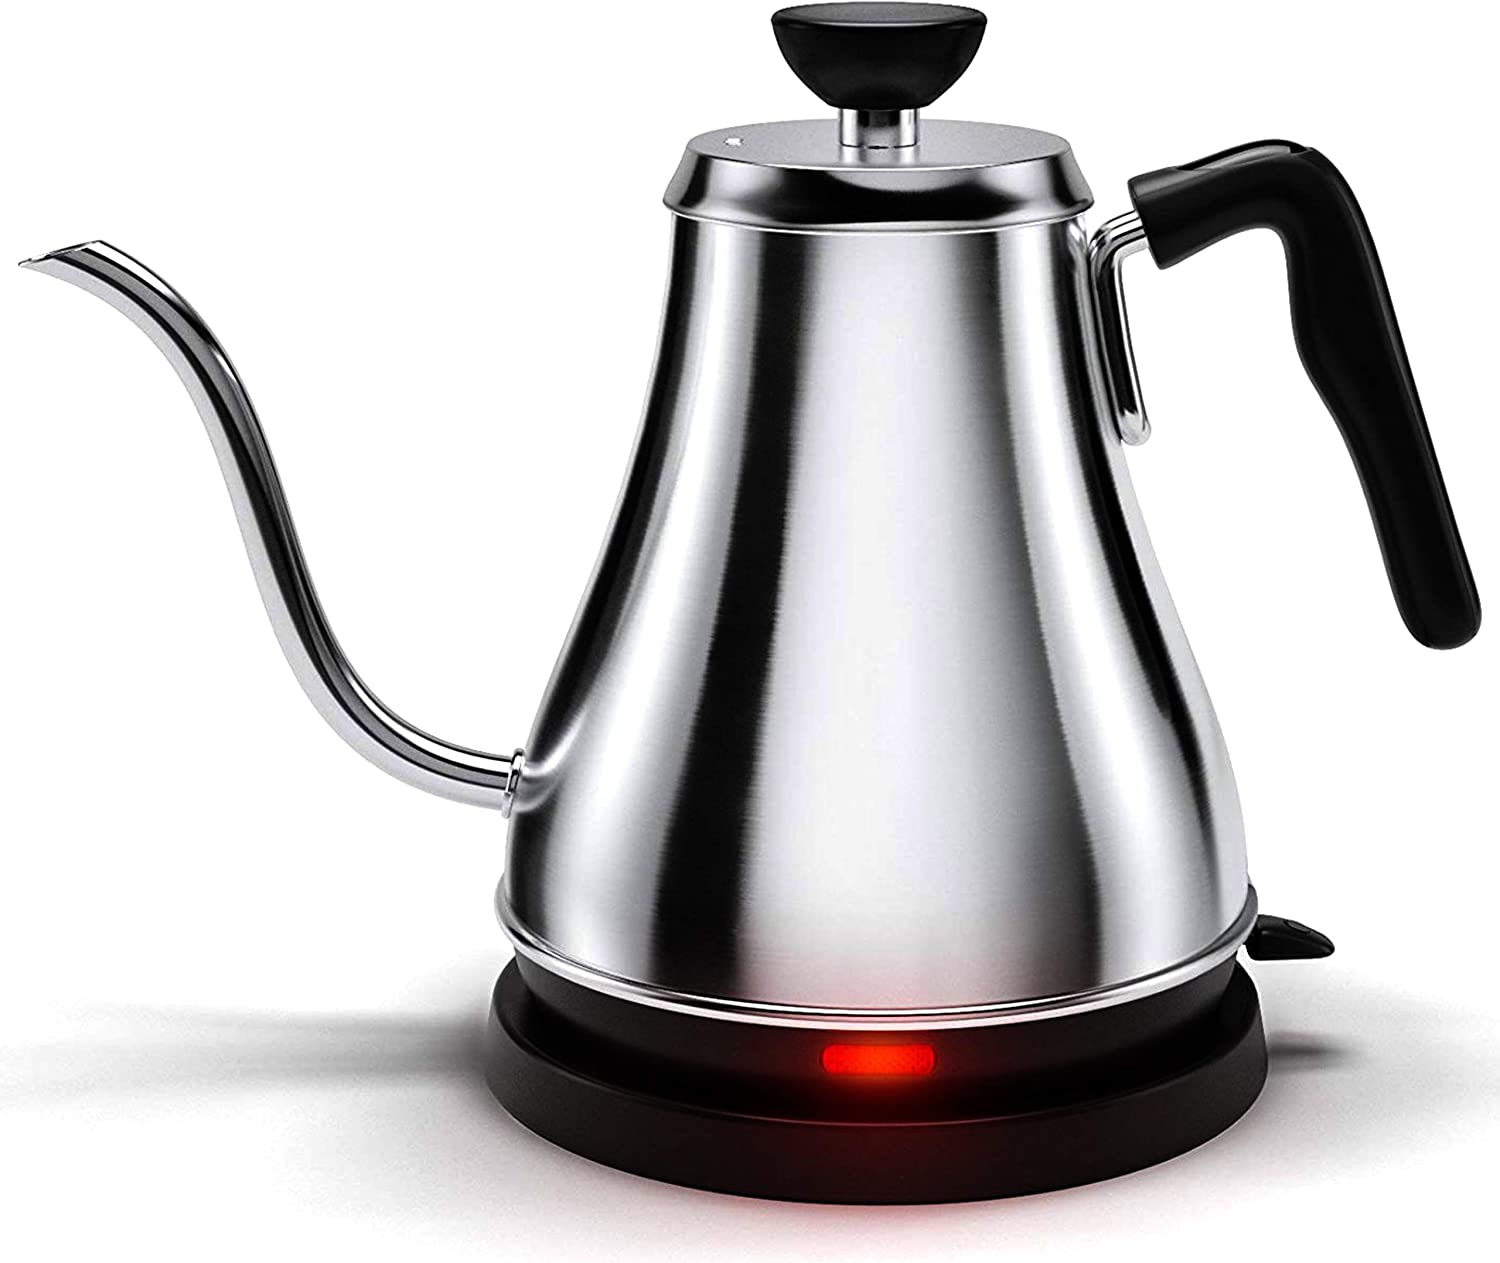 Willow & Everett Rapid Boil Auto Shut-Off Tea Pot Kettle, 1-Liter